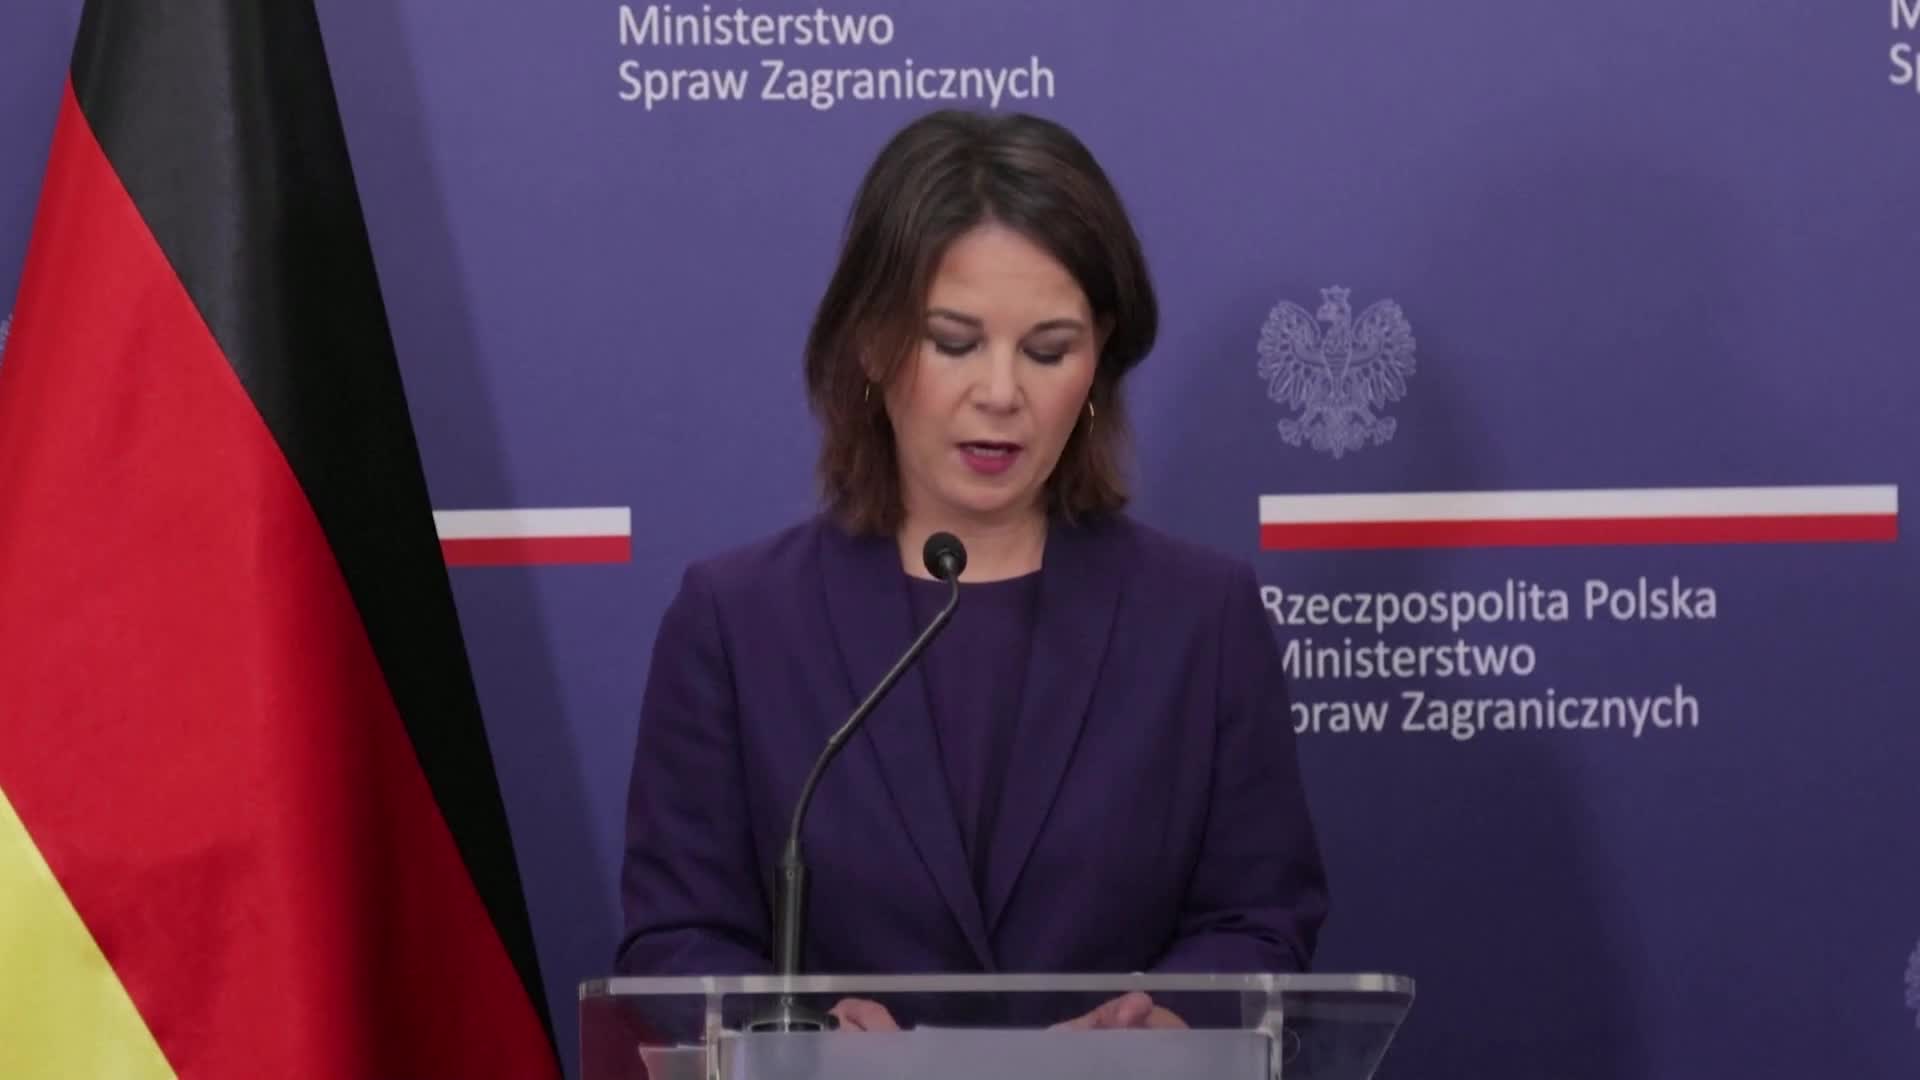 Полша очаква сътрудничество от Германия по искането ѝ за военни репарации (ВИДЕО)